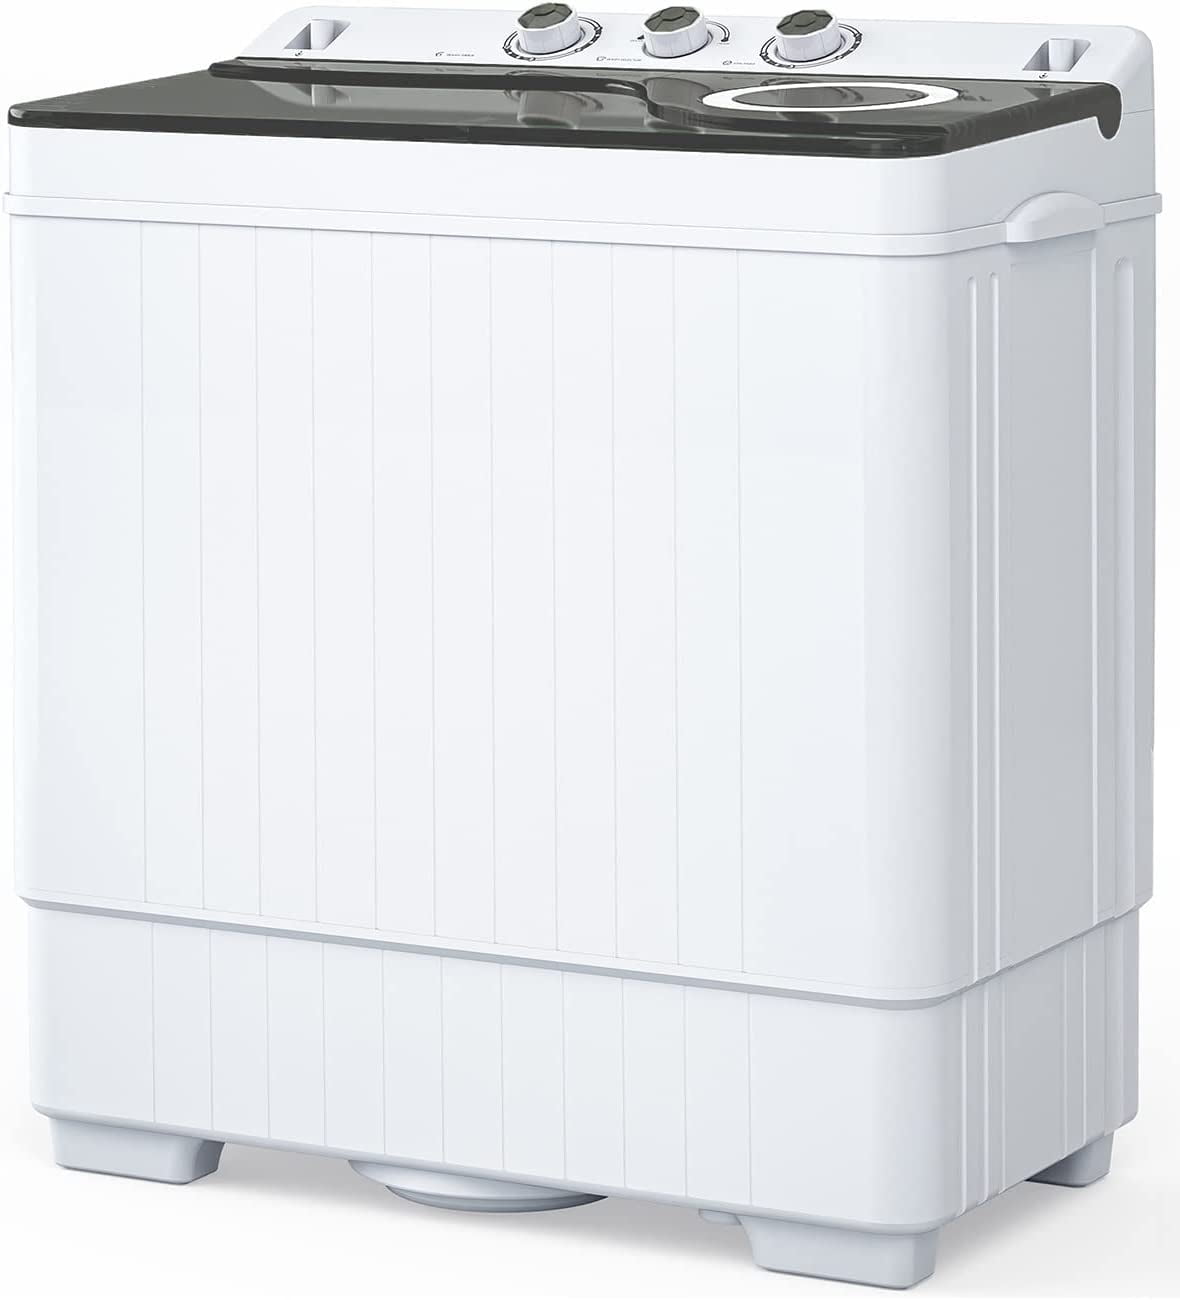 Fully Automatic Mini Portable Single-Tub Laundry Washing Machine